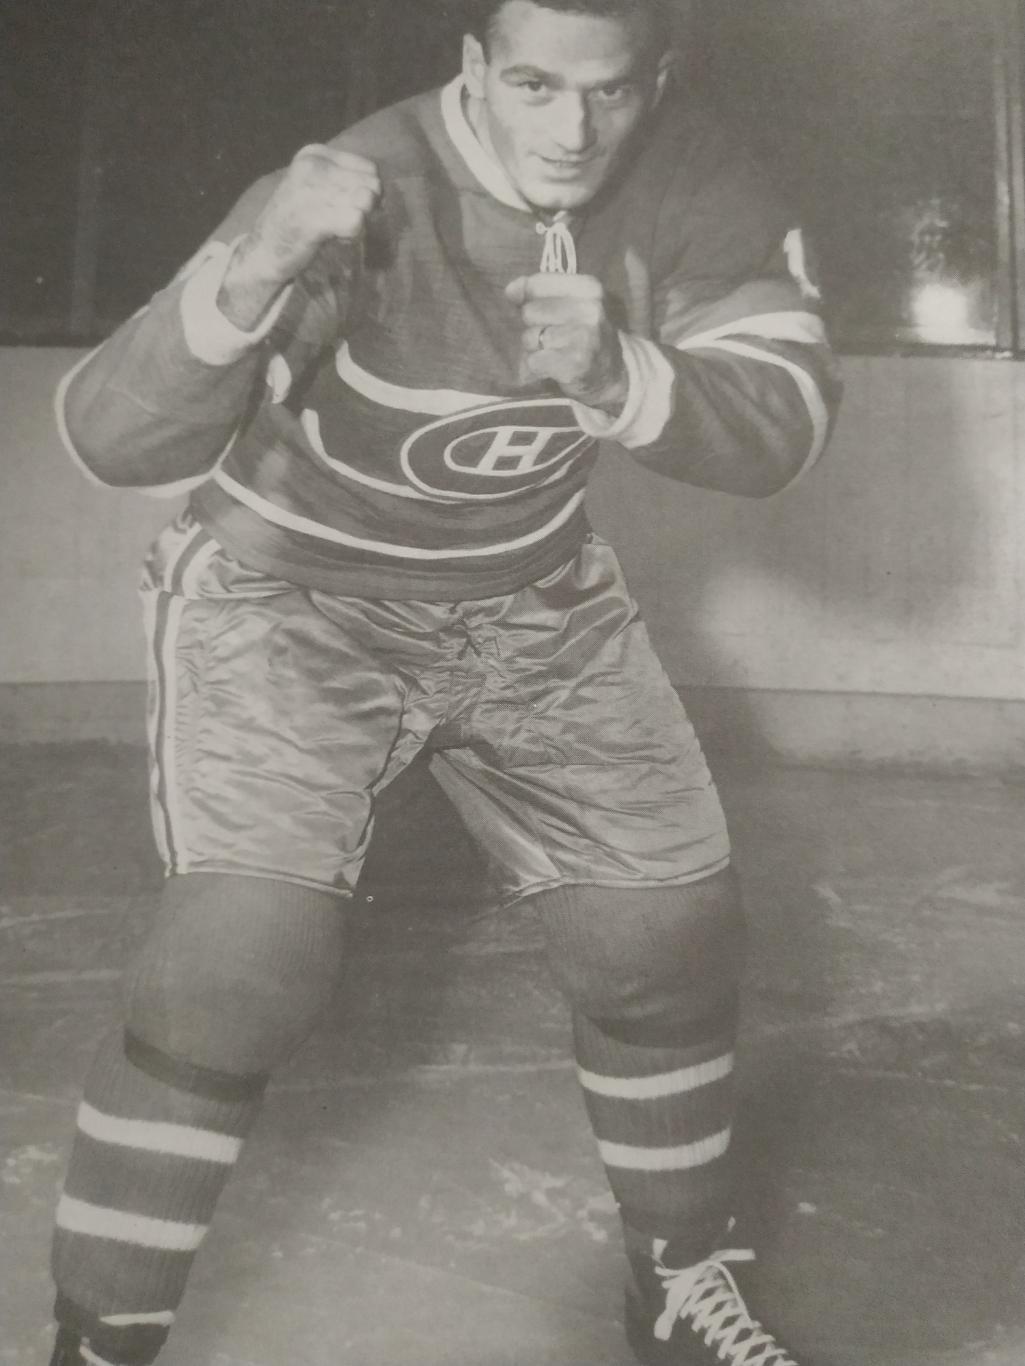 ХОККЕЙ ЖУРНАЛ ЕЖЕМЕСЯЧНИК СПОРТ РЕВЬЮ НХЛ NHL 1961 DECEMBRE SPORT REVUE 6